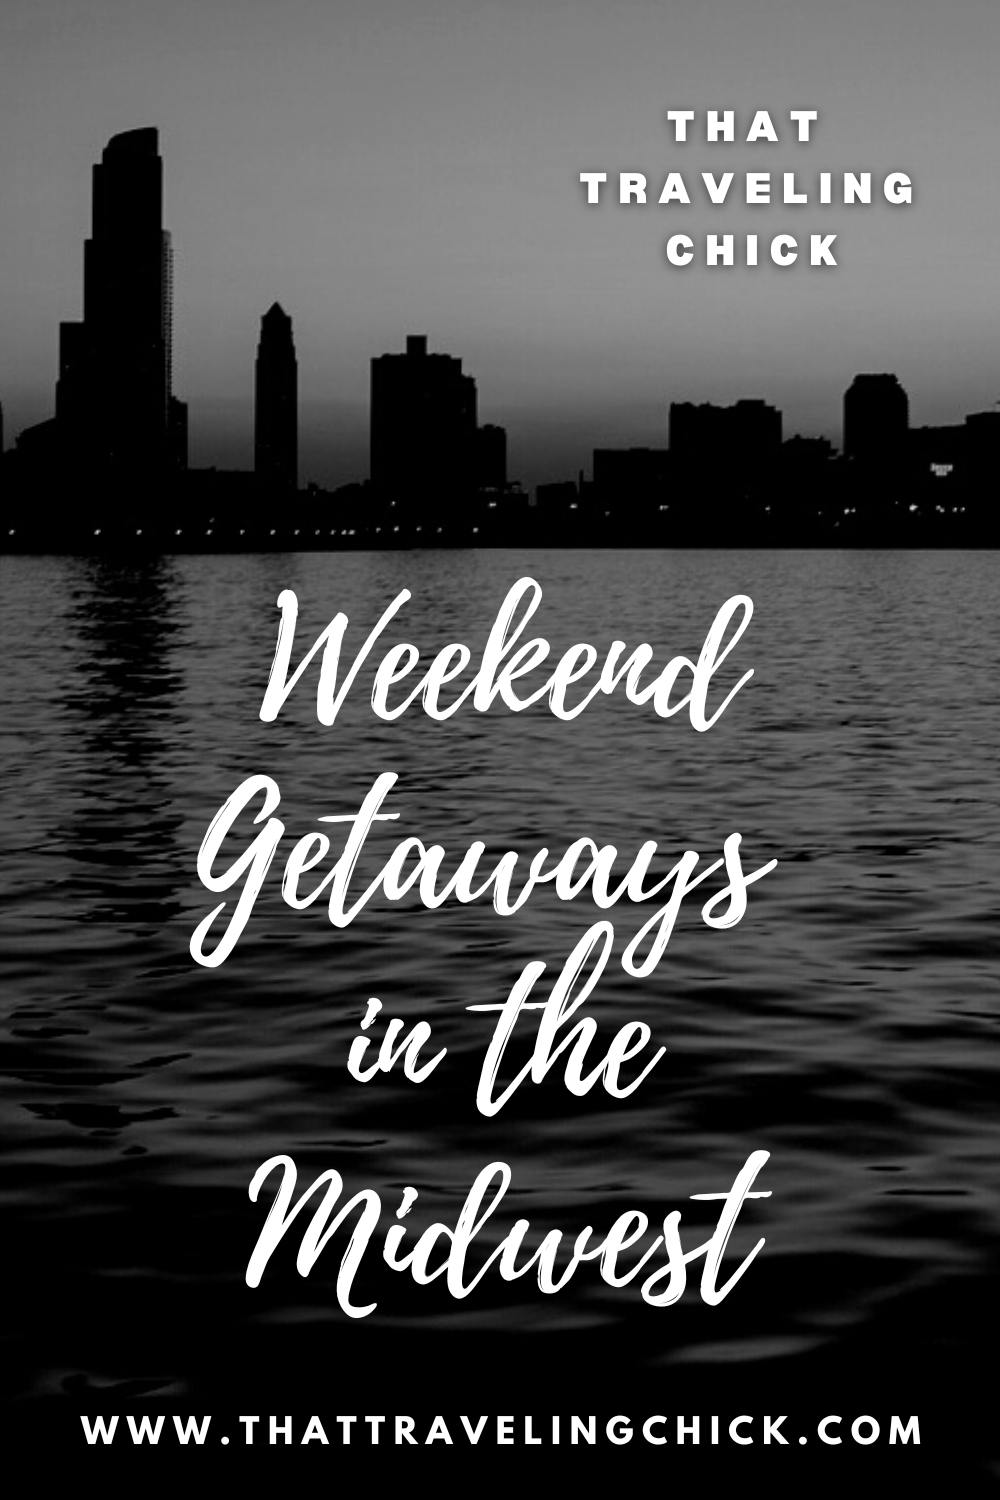 Top 5 Weekend Getaways in the Midwest